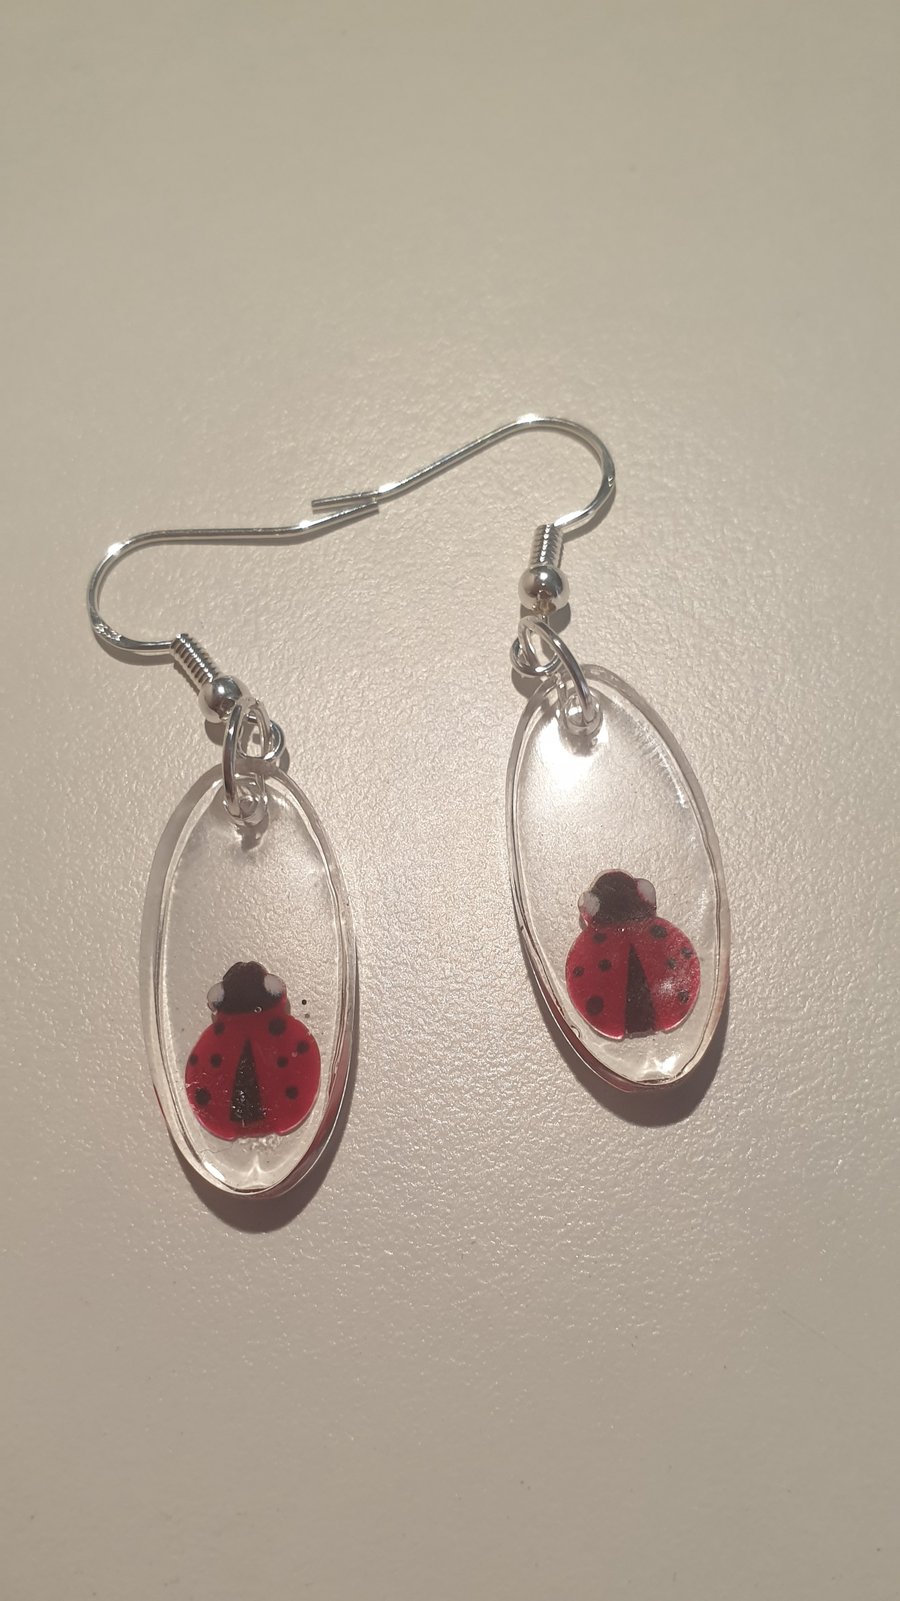 Oval ladybird resin earrings